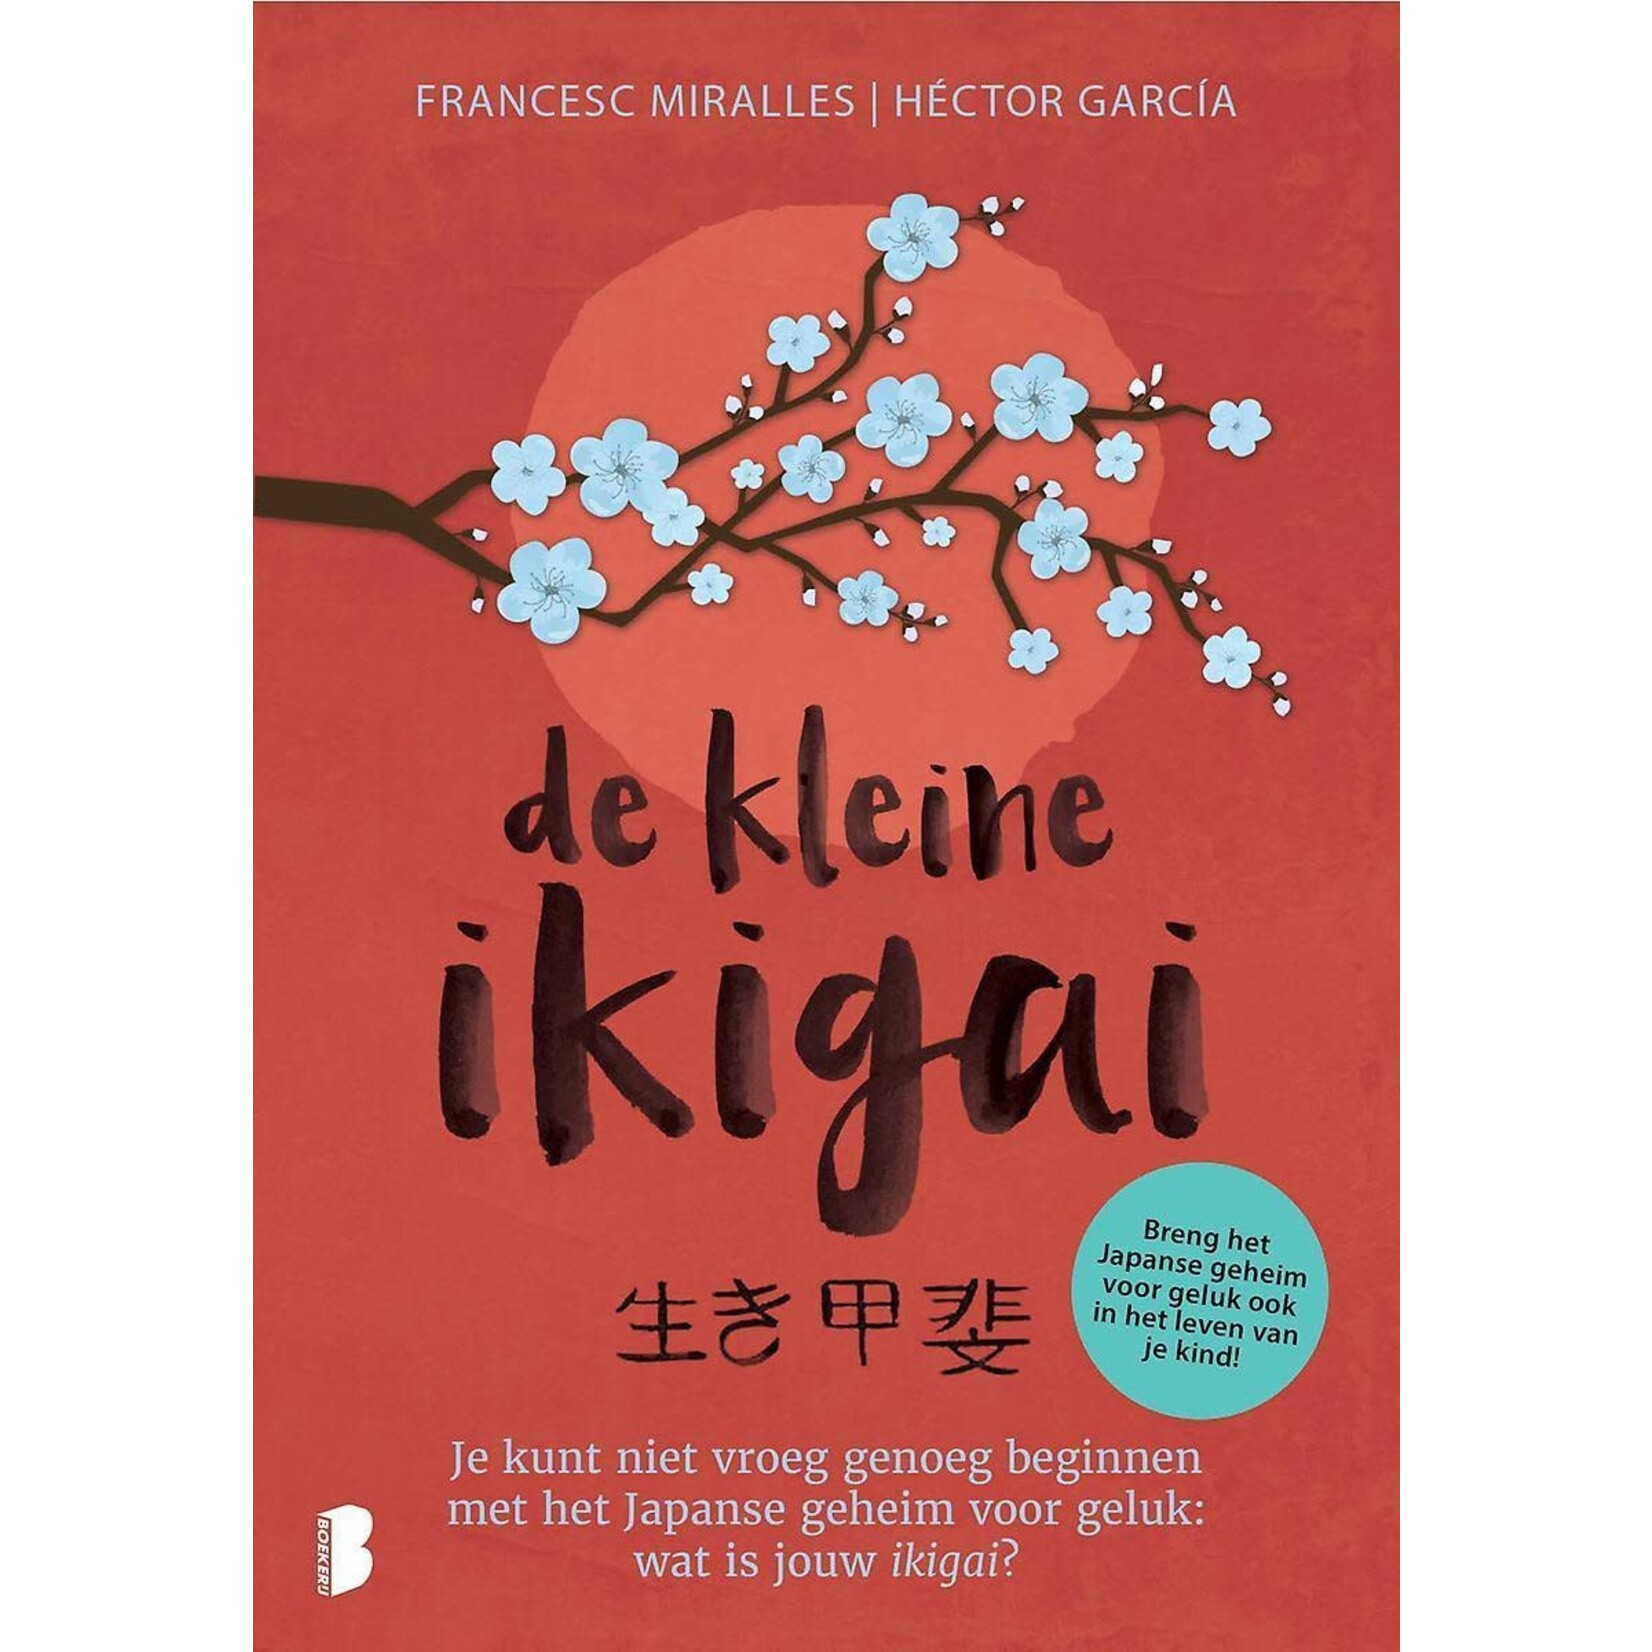 De kleine ikigai, je kunt niet vroeg genoeg beginnen met het Japanse geheim voor geluk: wat is jouw ikigai?